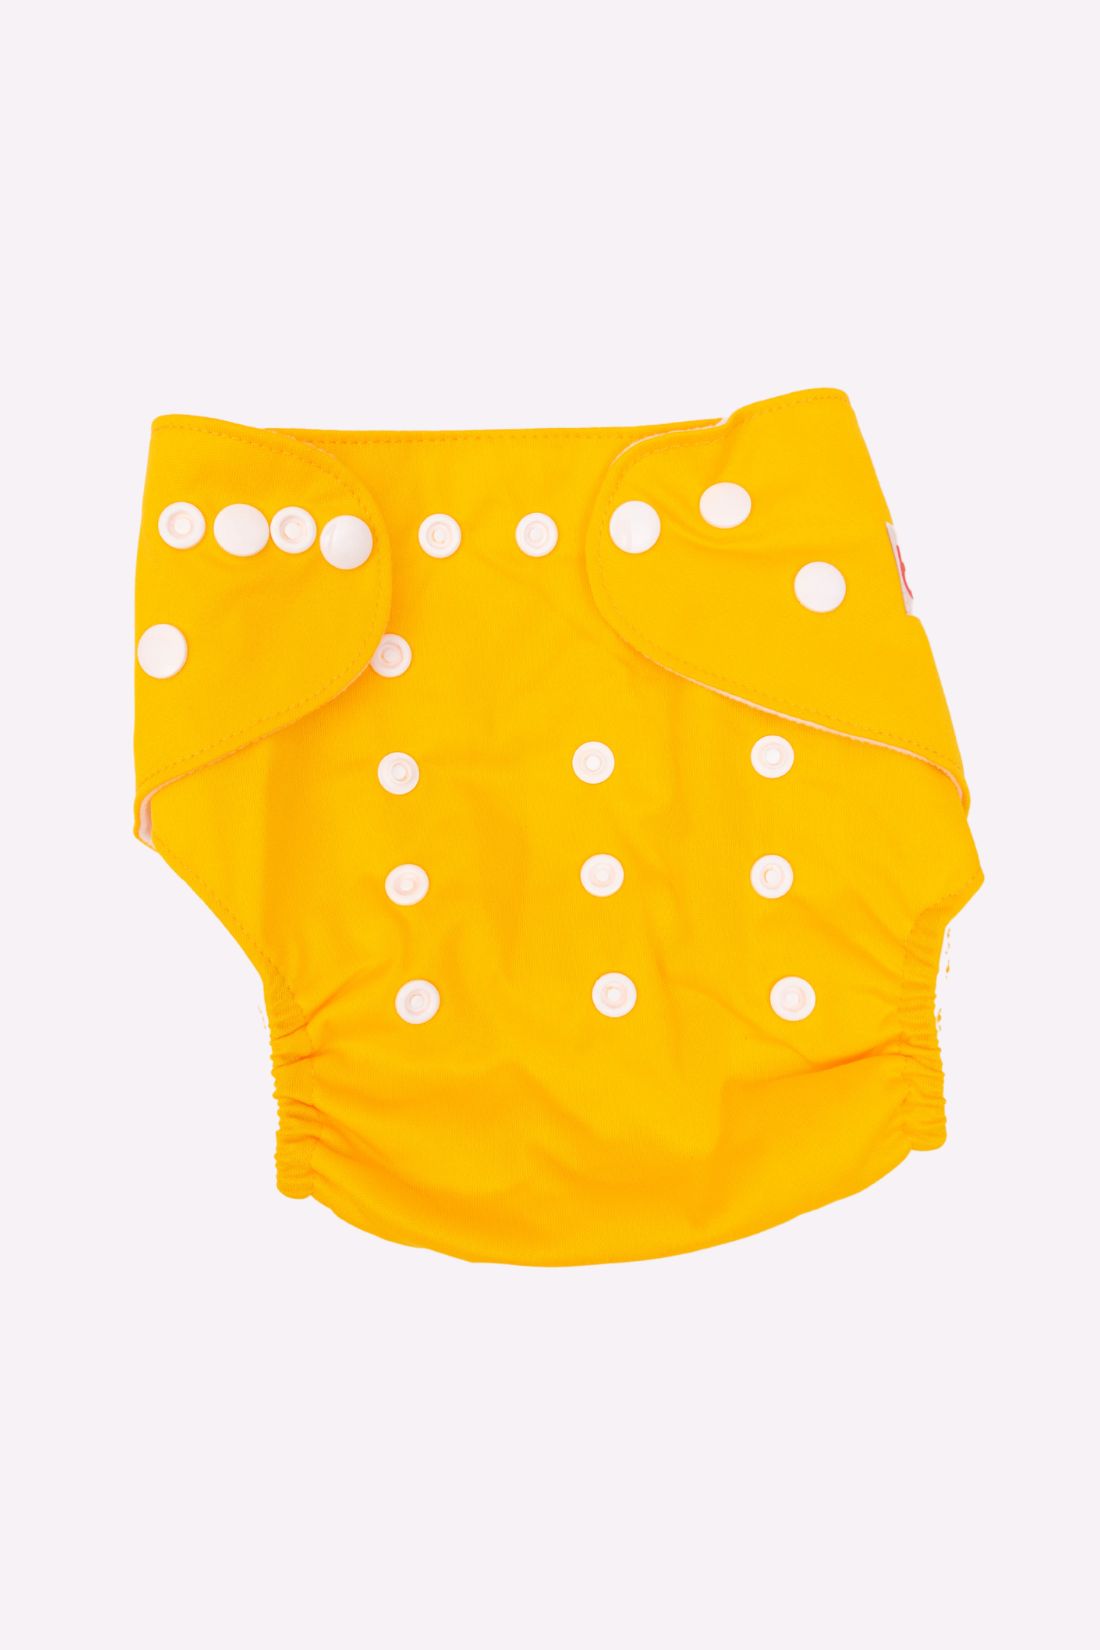 Plain Yellow Gear Cloth Diaper